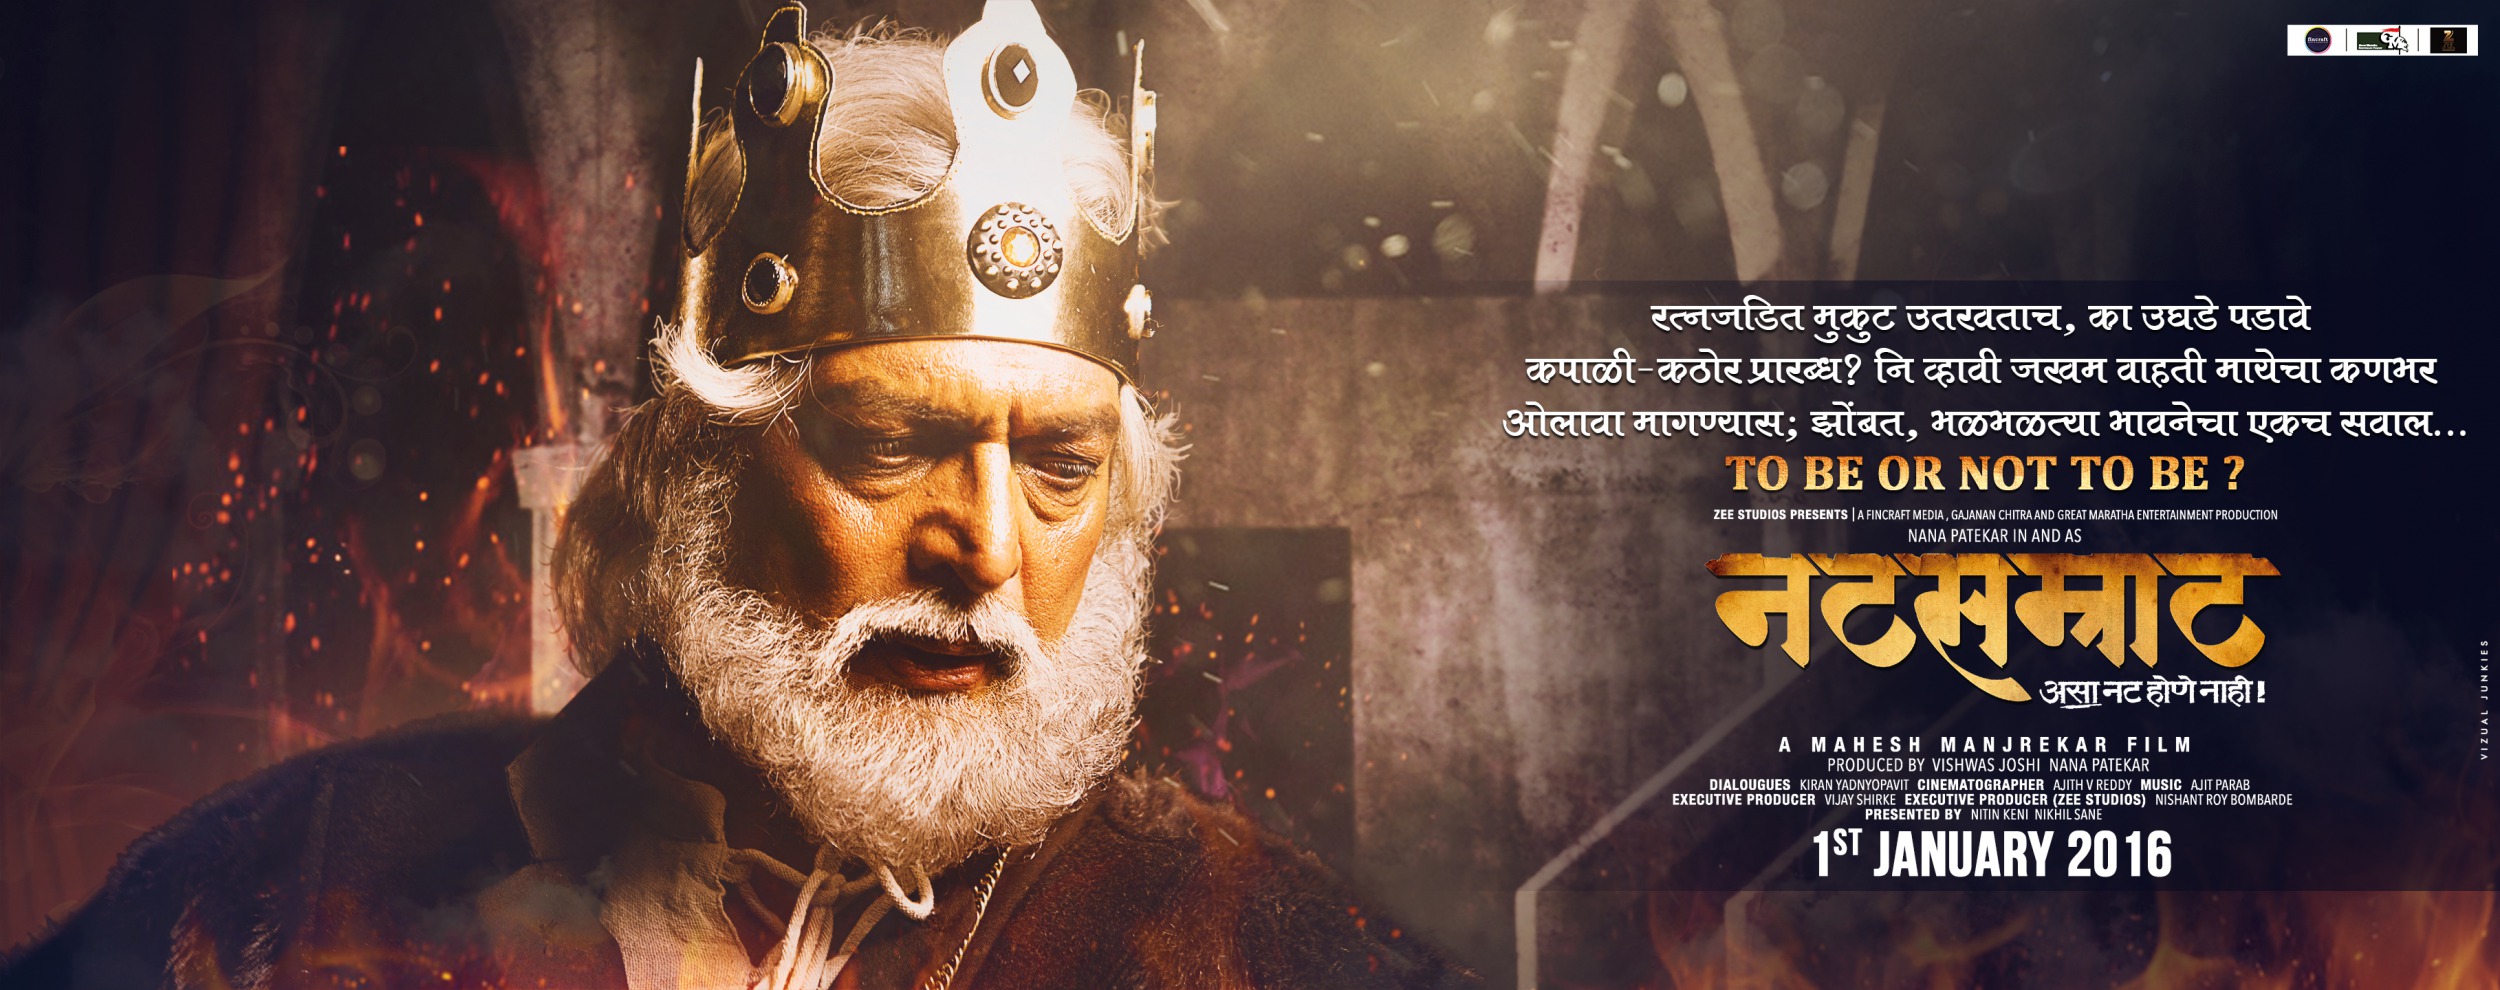 Mega Sized Movie Poster Image for Natsamrat (#1 of 22)